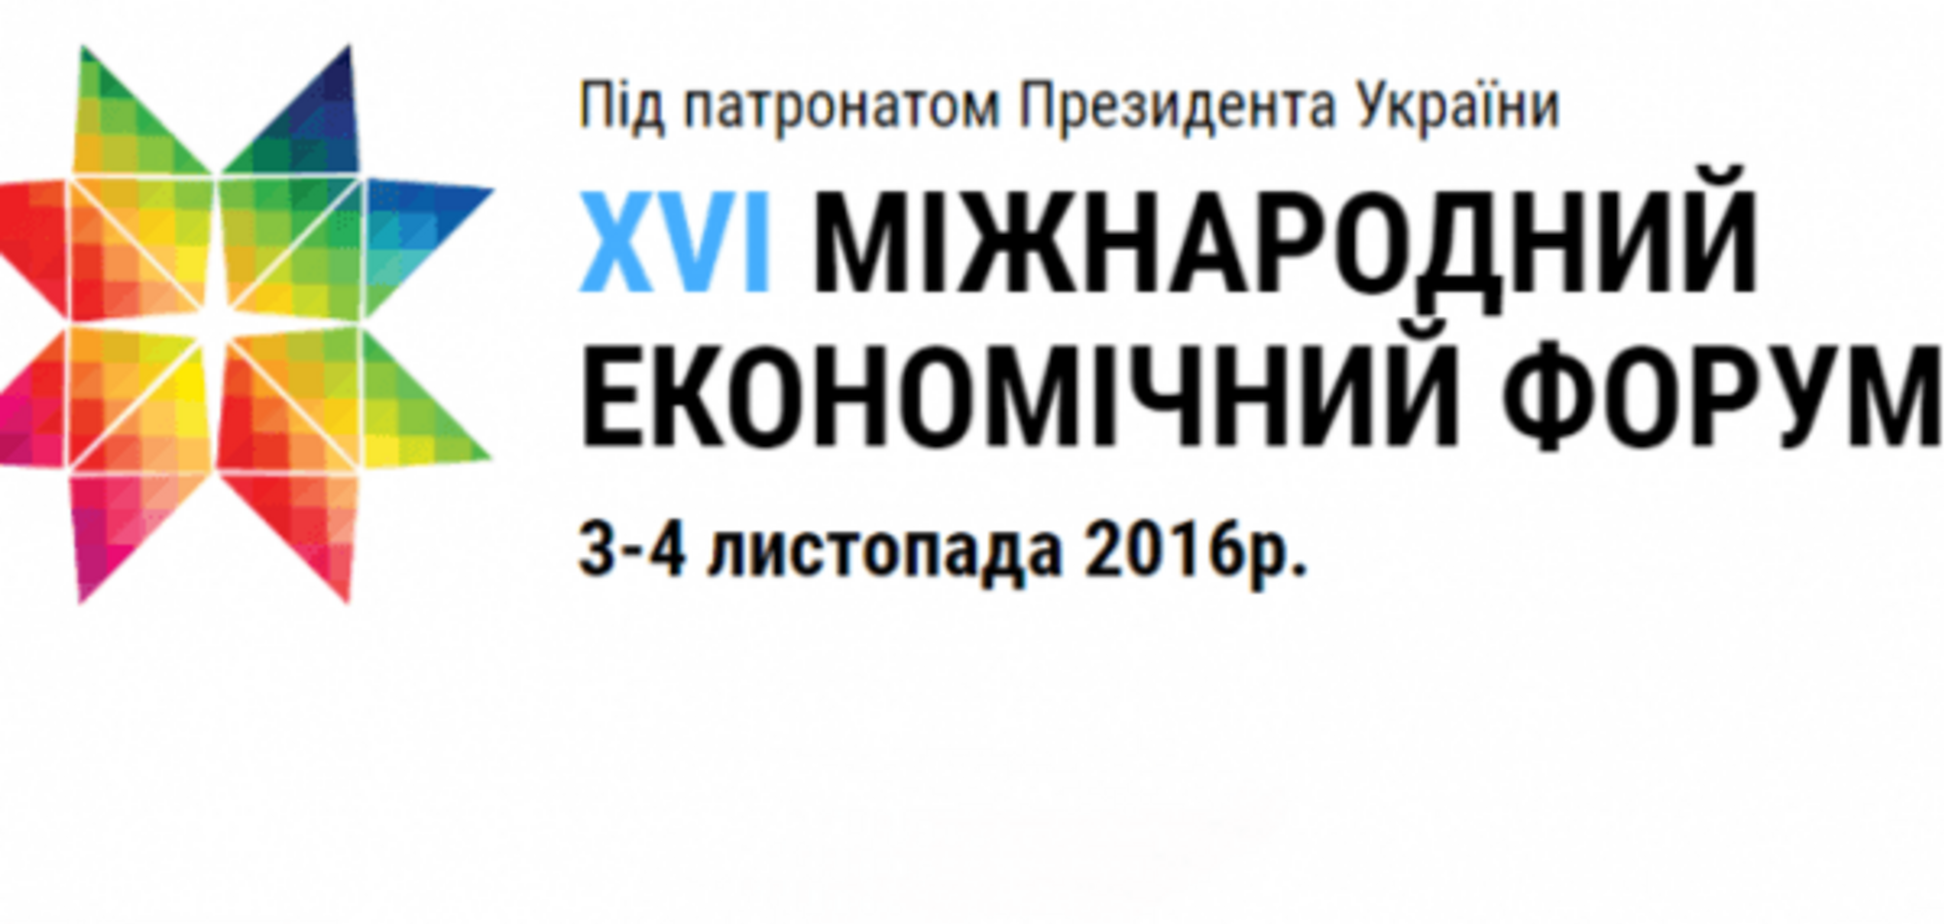 В первый день львовского XVI Экономического форума будут дискутировать об экономическом развитии и привлечении инвестиций